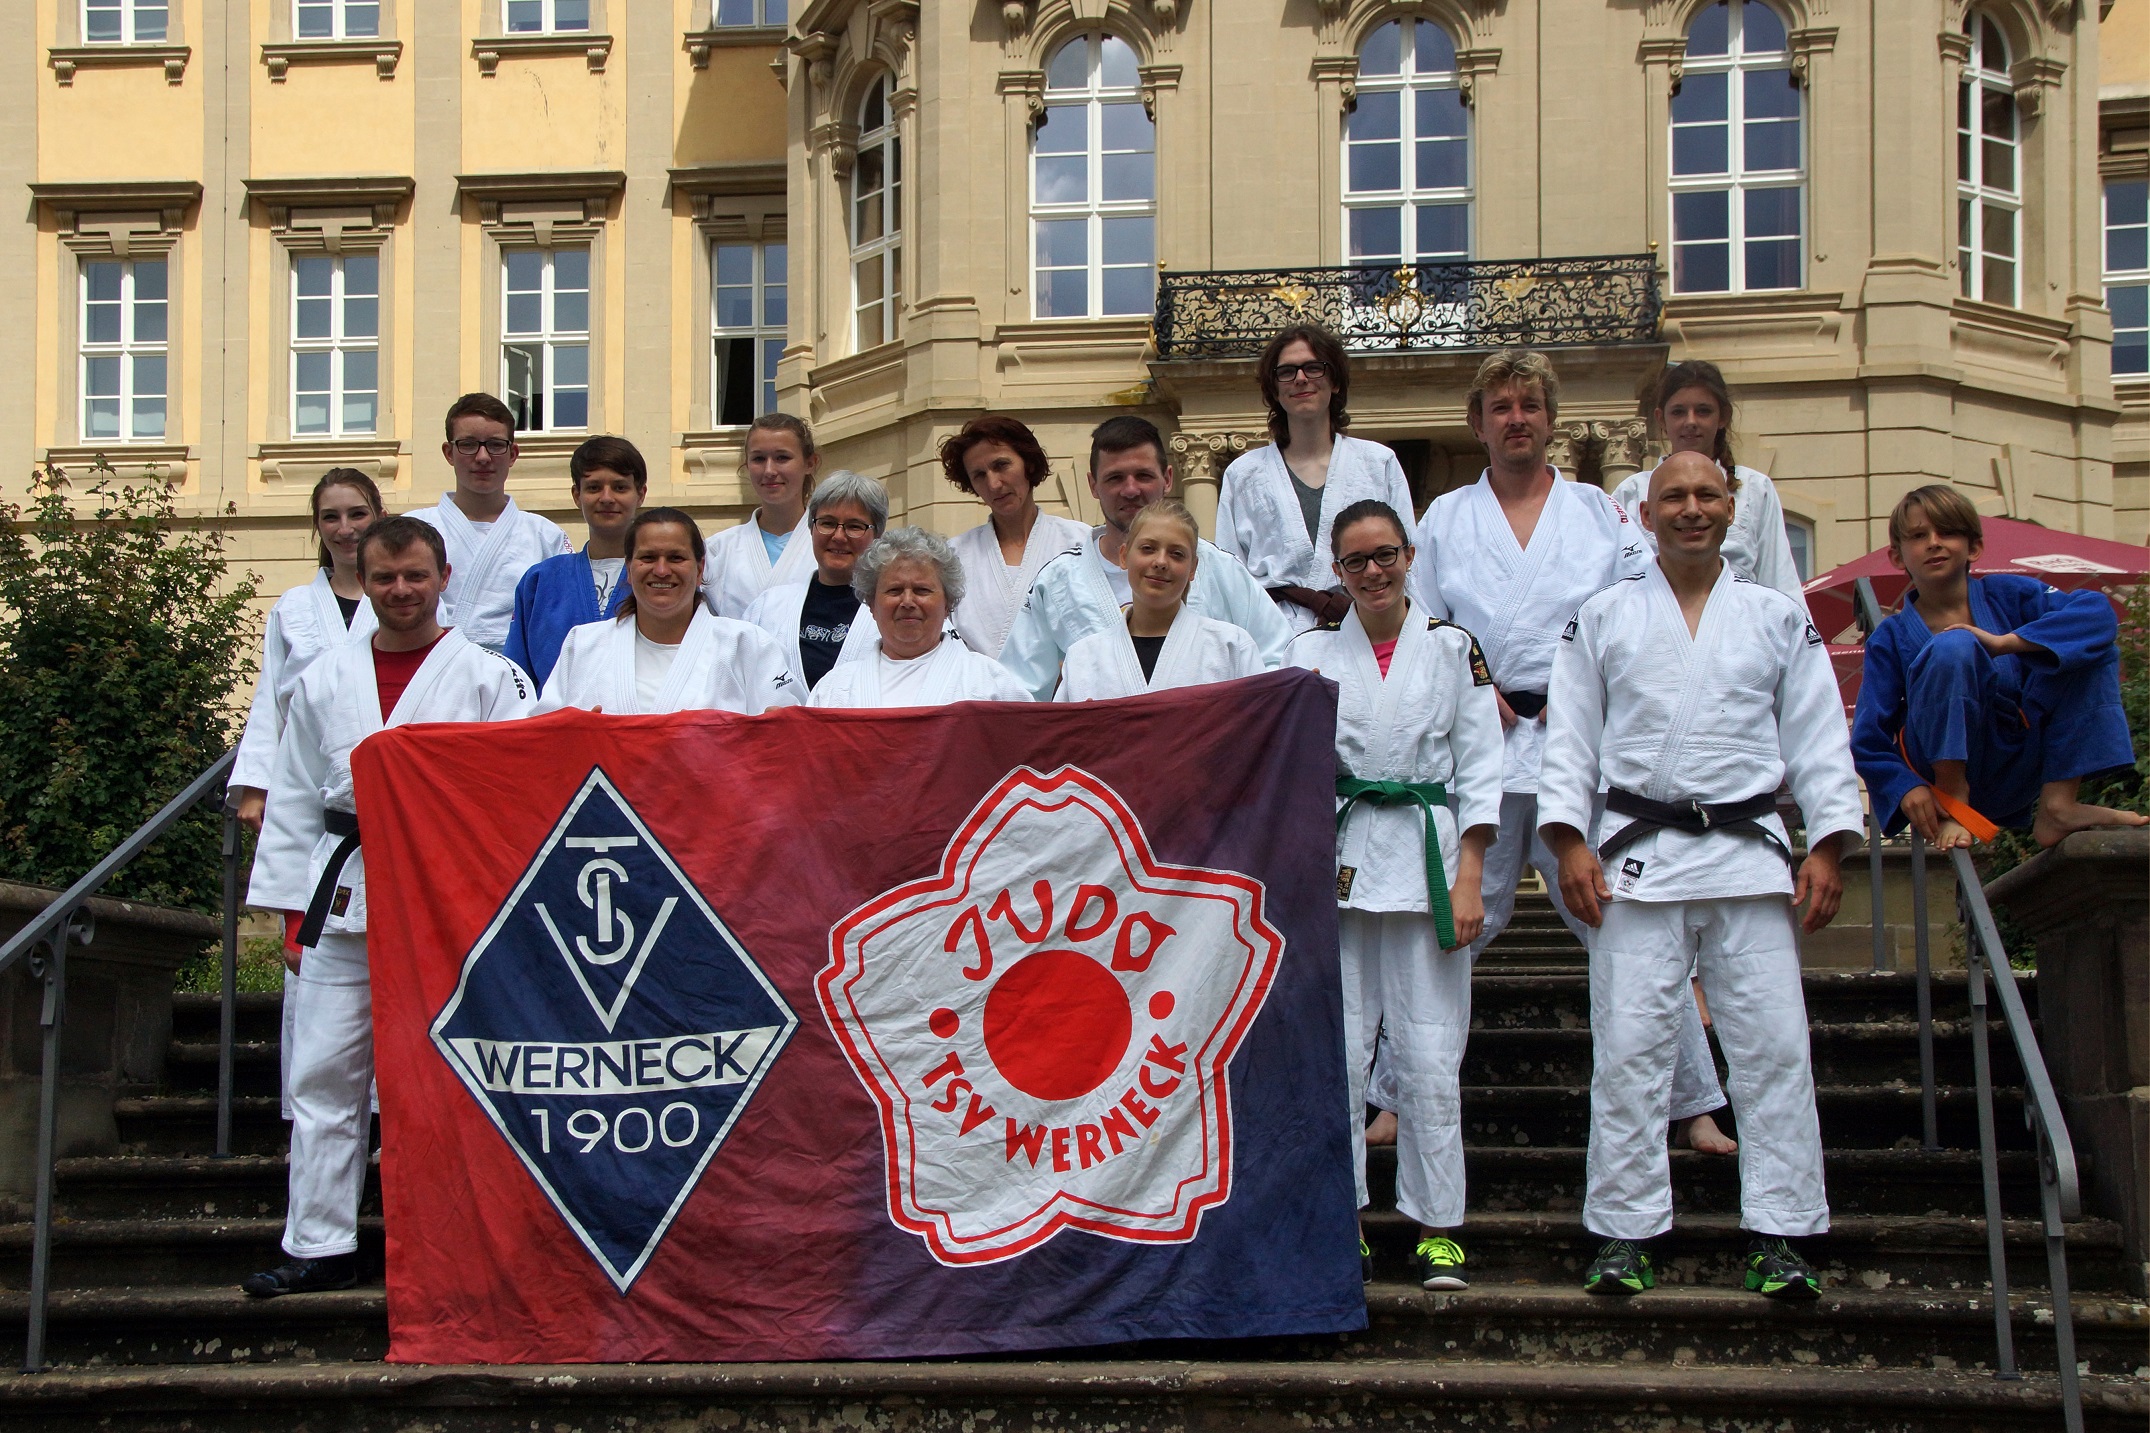 Bild: Gruppen Bild, alle Judokas haben ihren Judoanzug an. Es wird ein Poster nach vorn gehalten auf dem das Logo des Sportvereins und der Judo Abteilung ist.